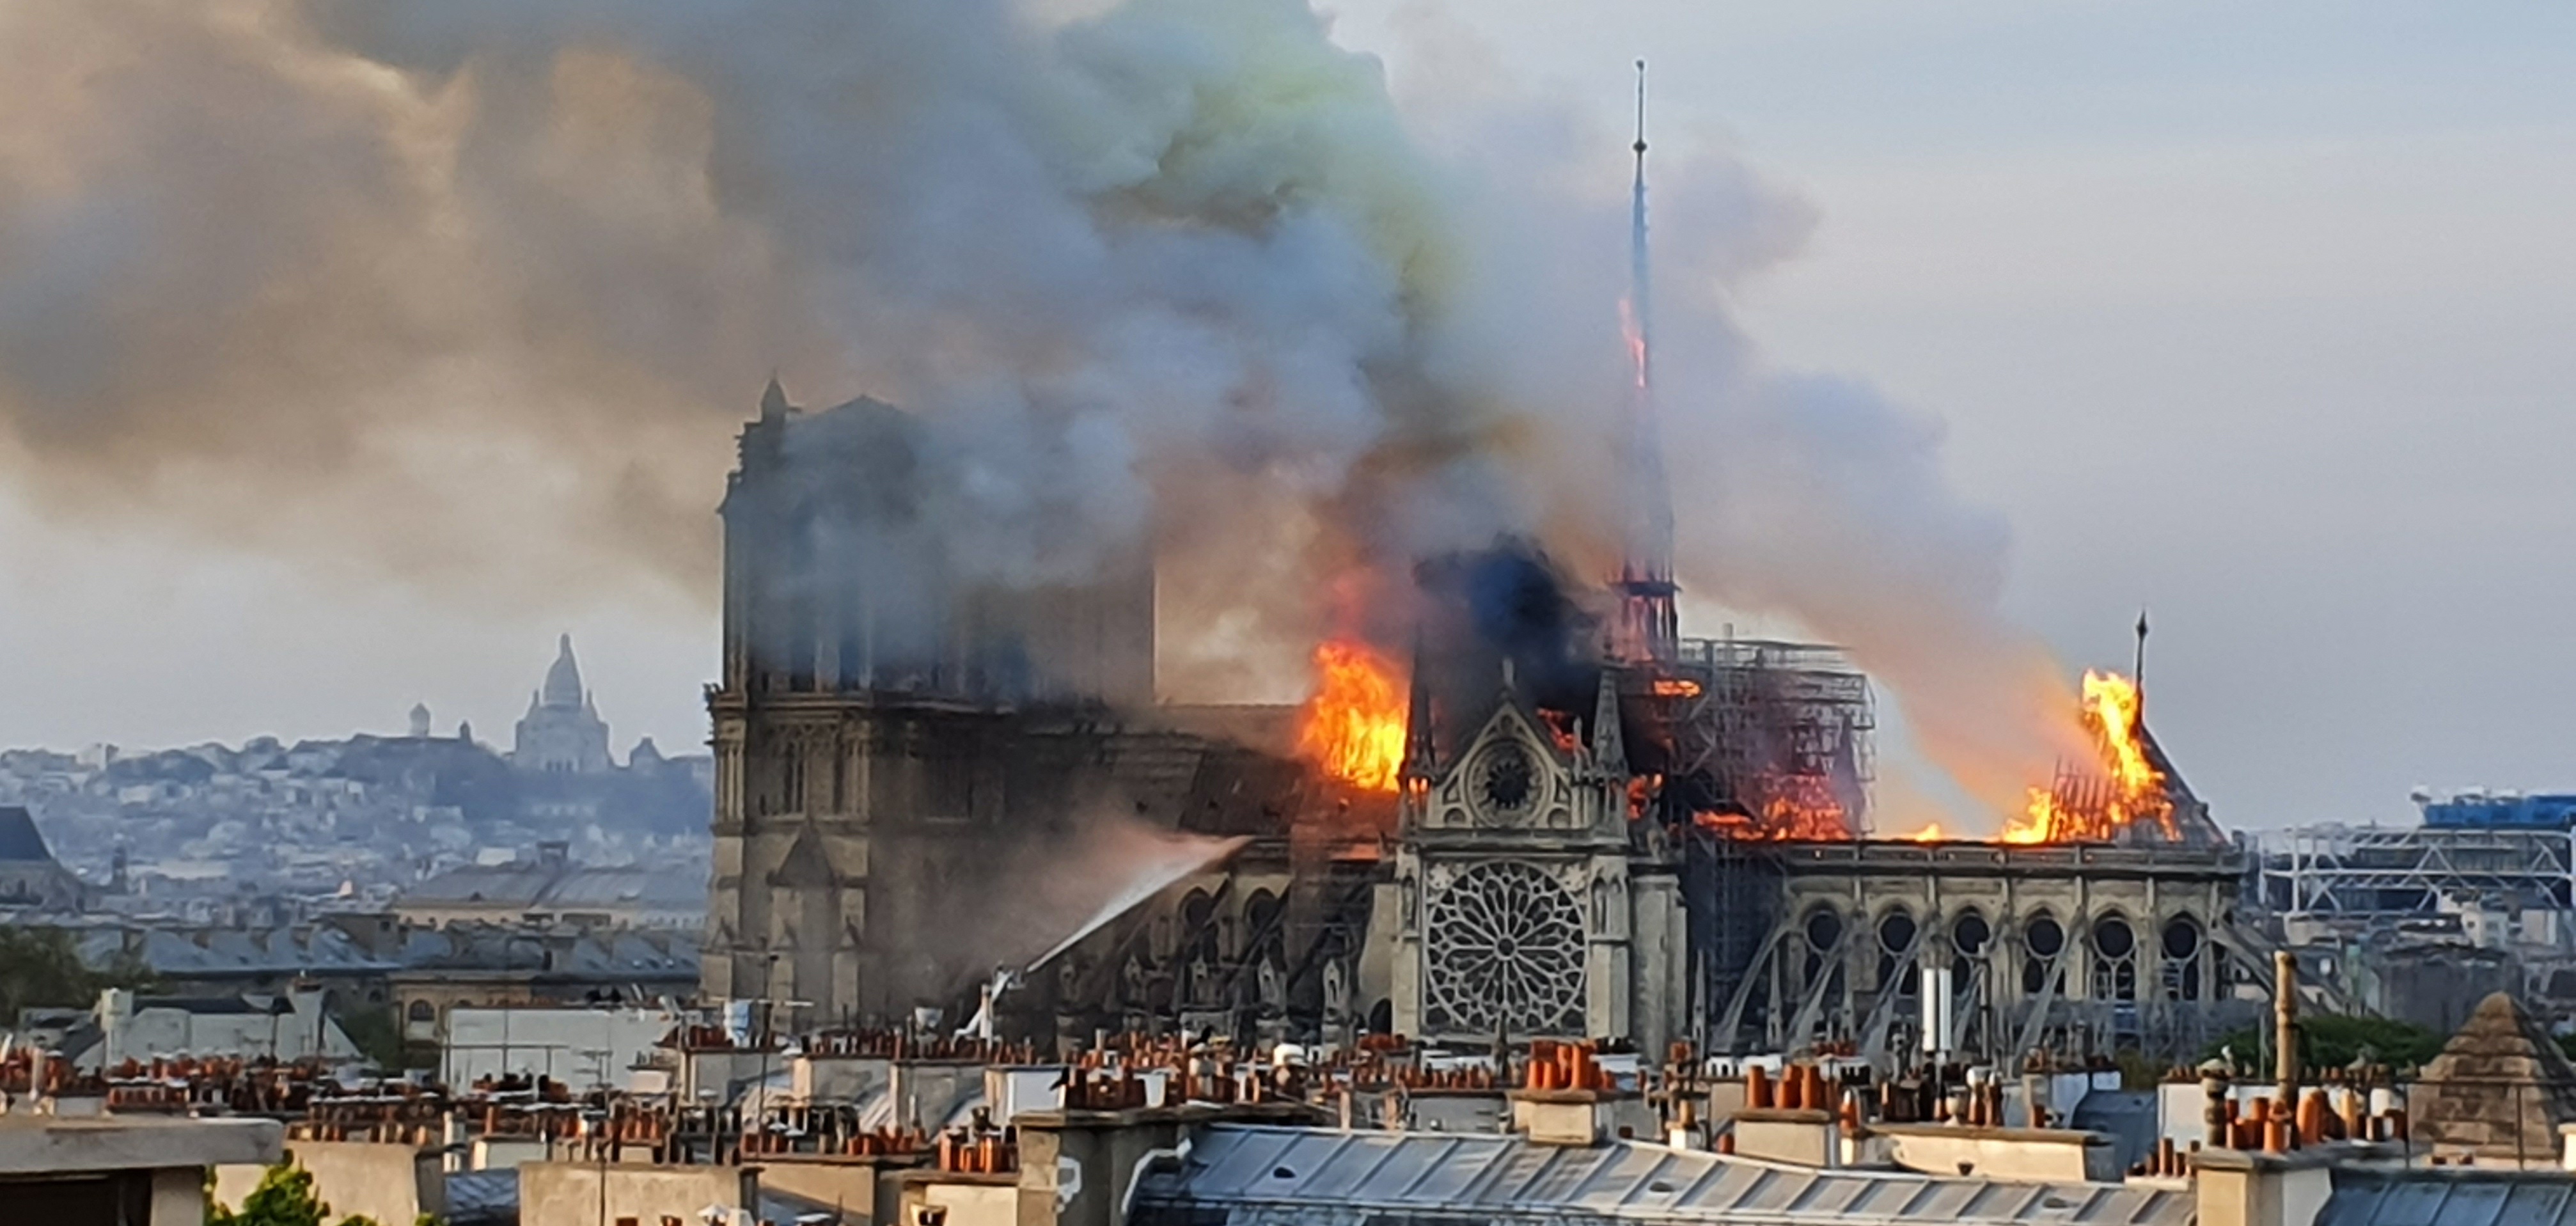 Incendie de Notre-Dame à Paris @Marind